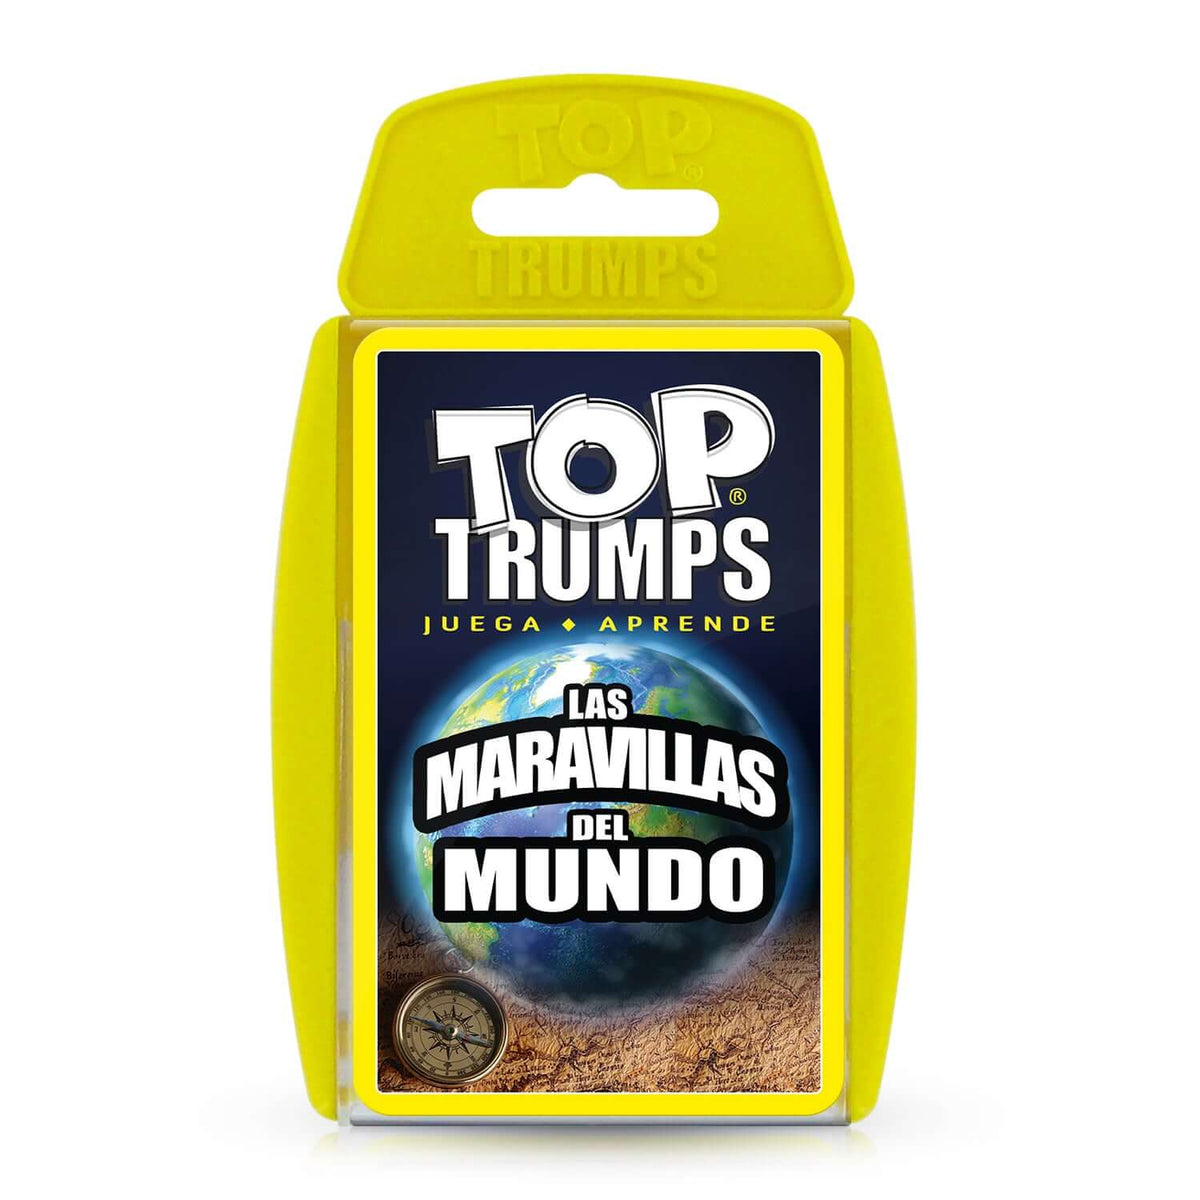 Top Trumps Maravillas del Mundo Clásicos - Edición en español